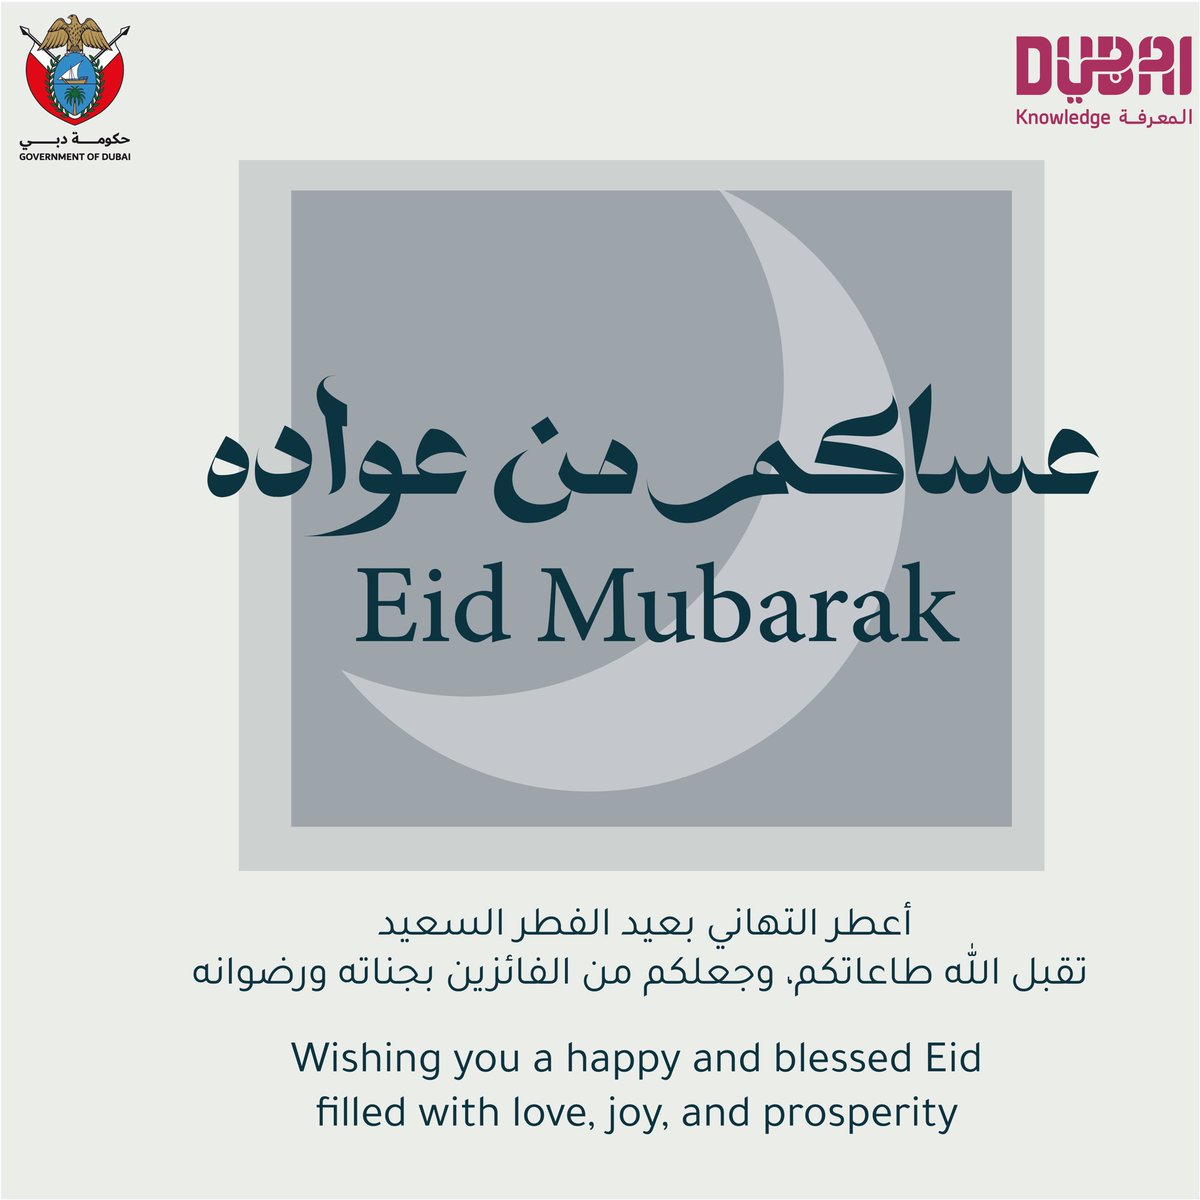 عيدكم مبارك من هيئة المعرفة والتنمية البشرية Eid Mubarak from KHDA